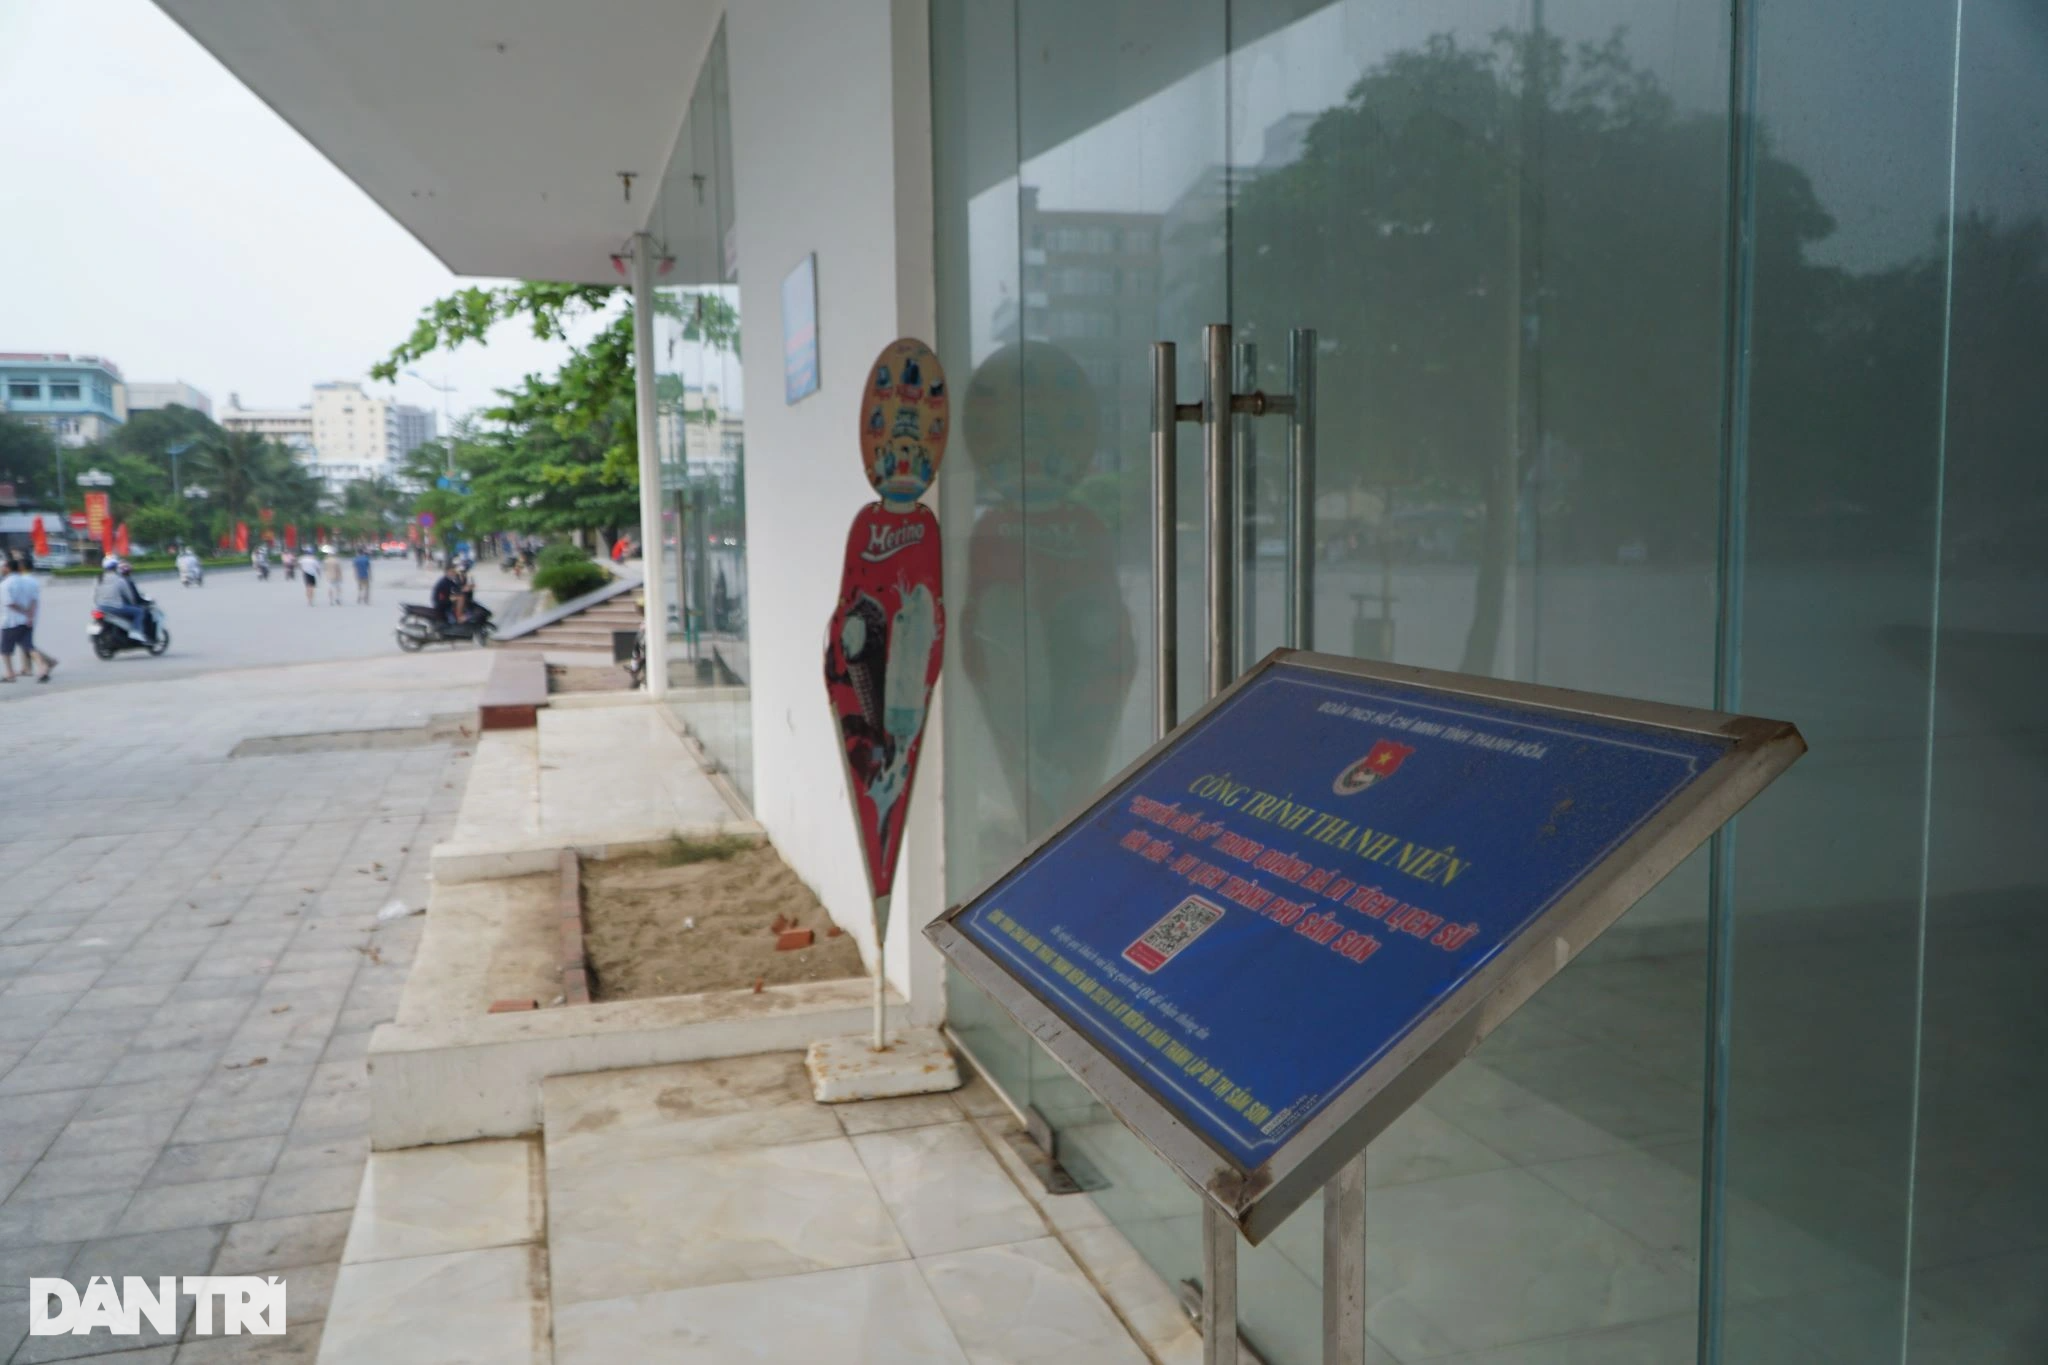 View - Chưa thể định đoạt "số phận" các công trình của FLC trả lại Sầm Sơn | Báo Dân trí